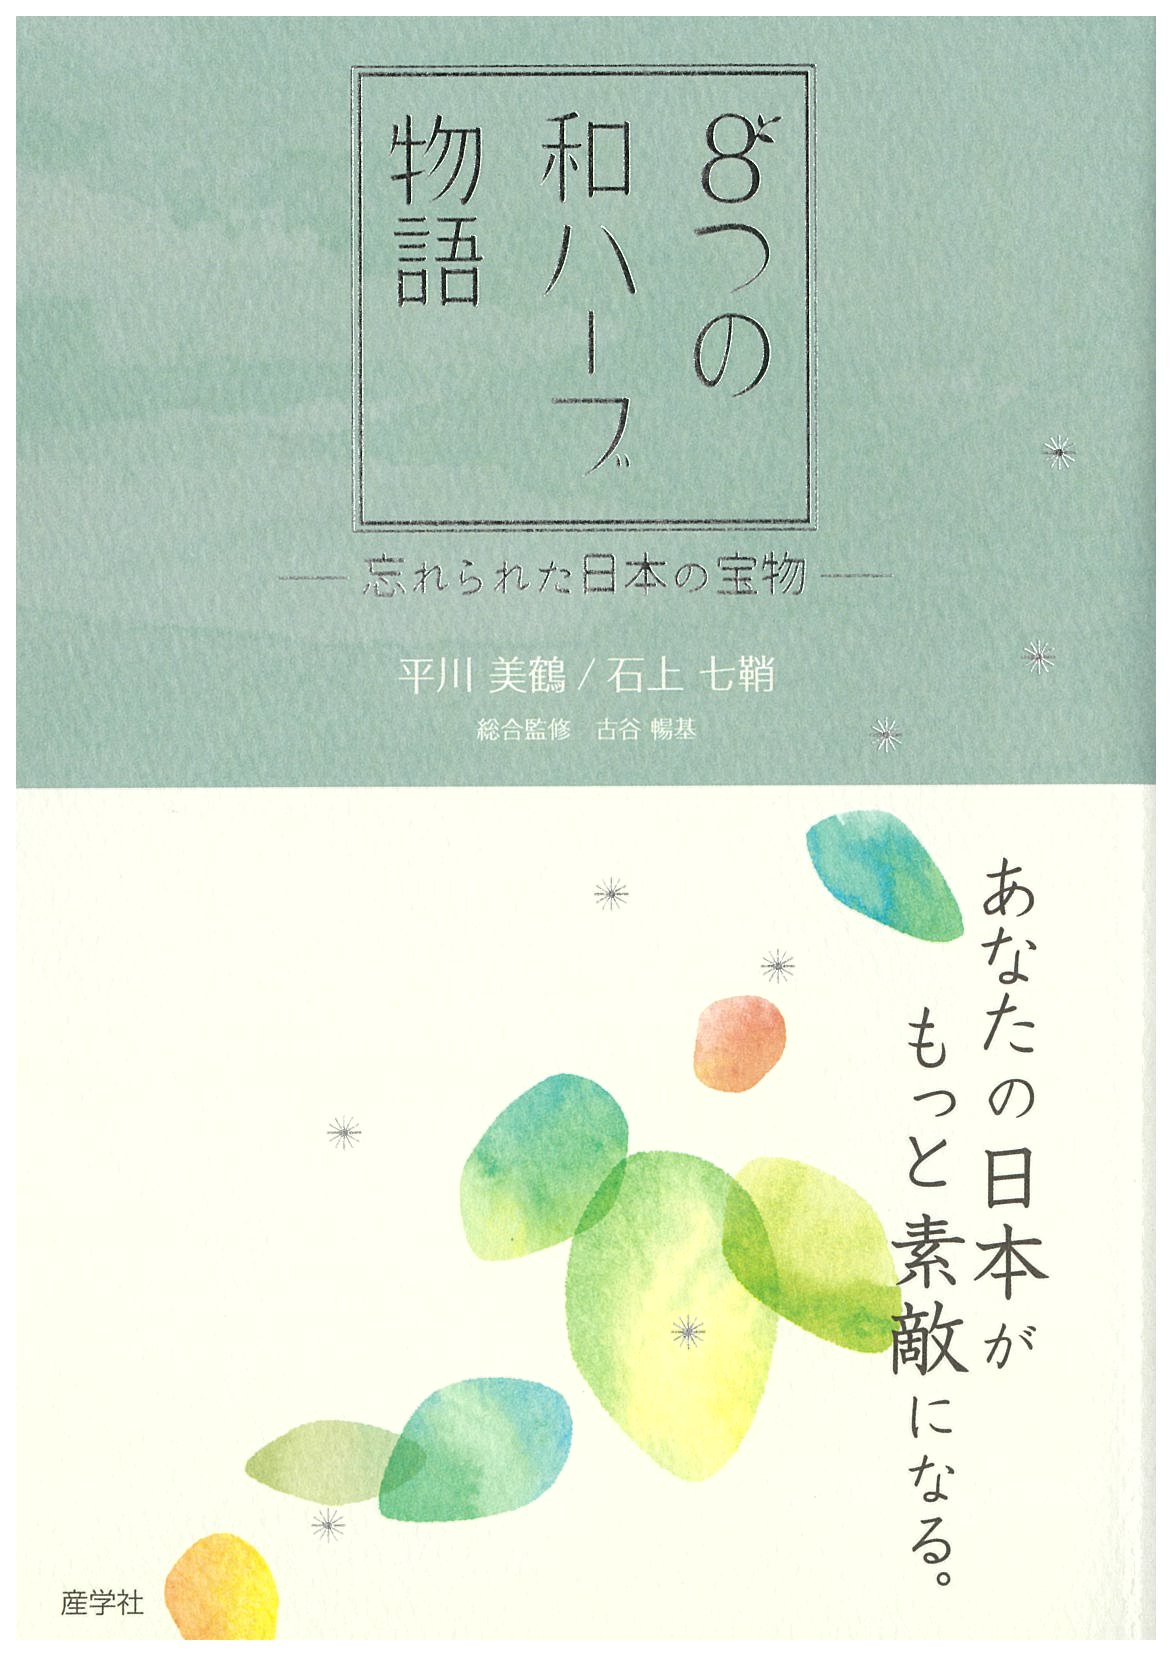 『８つの和ハーブ物語』〜忘れられた日本の宝物〜